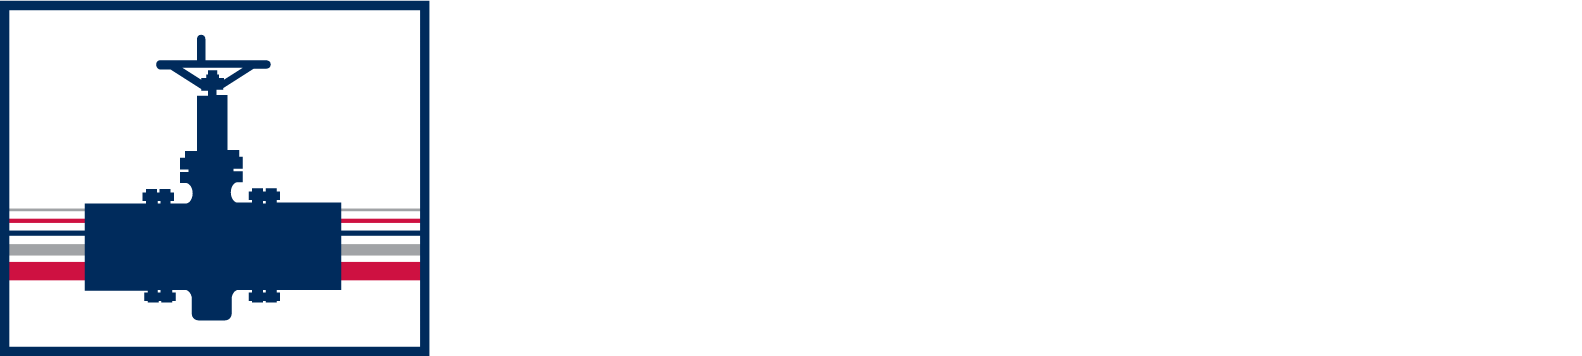 Plains GP logo large for dark backgrounds (transparent PNG)